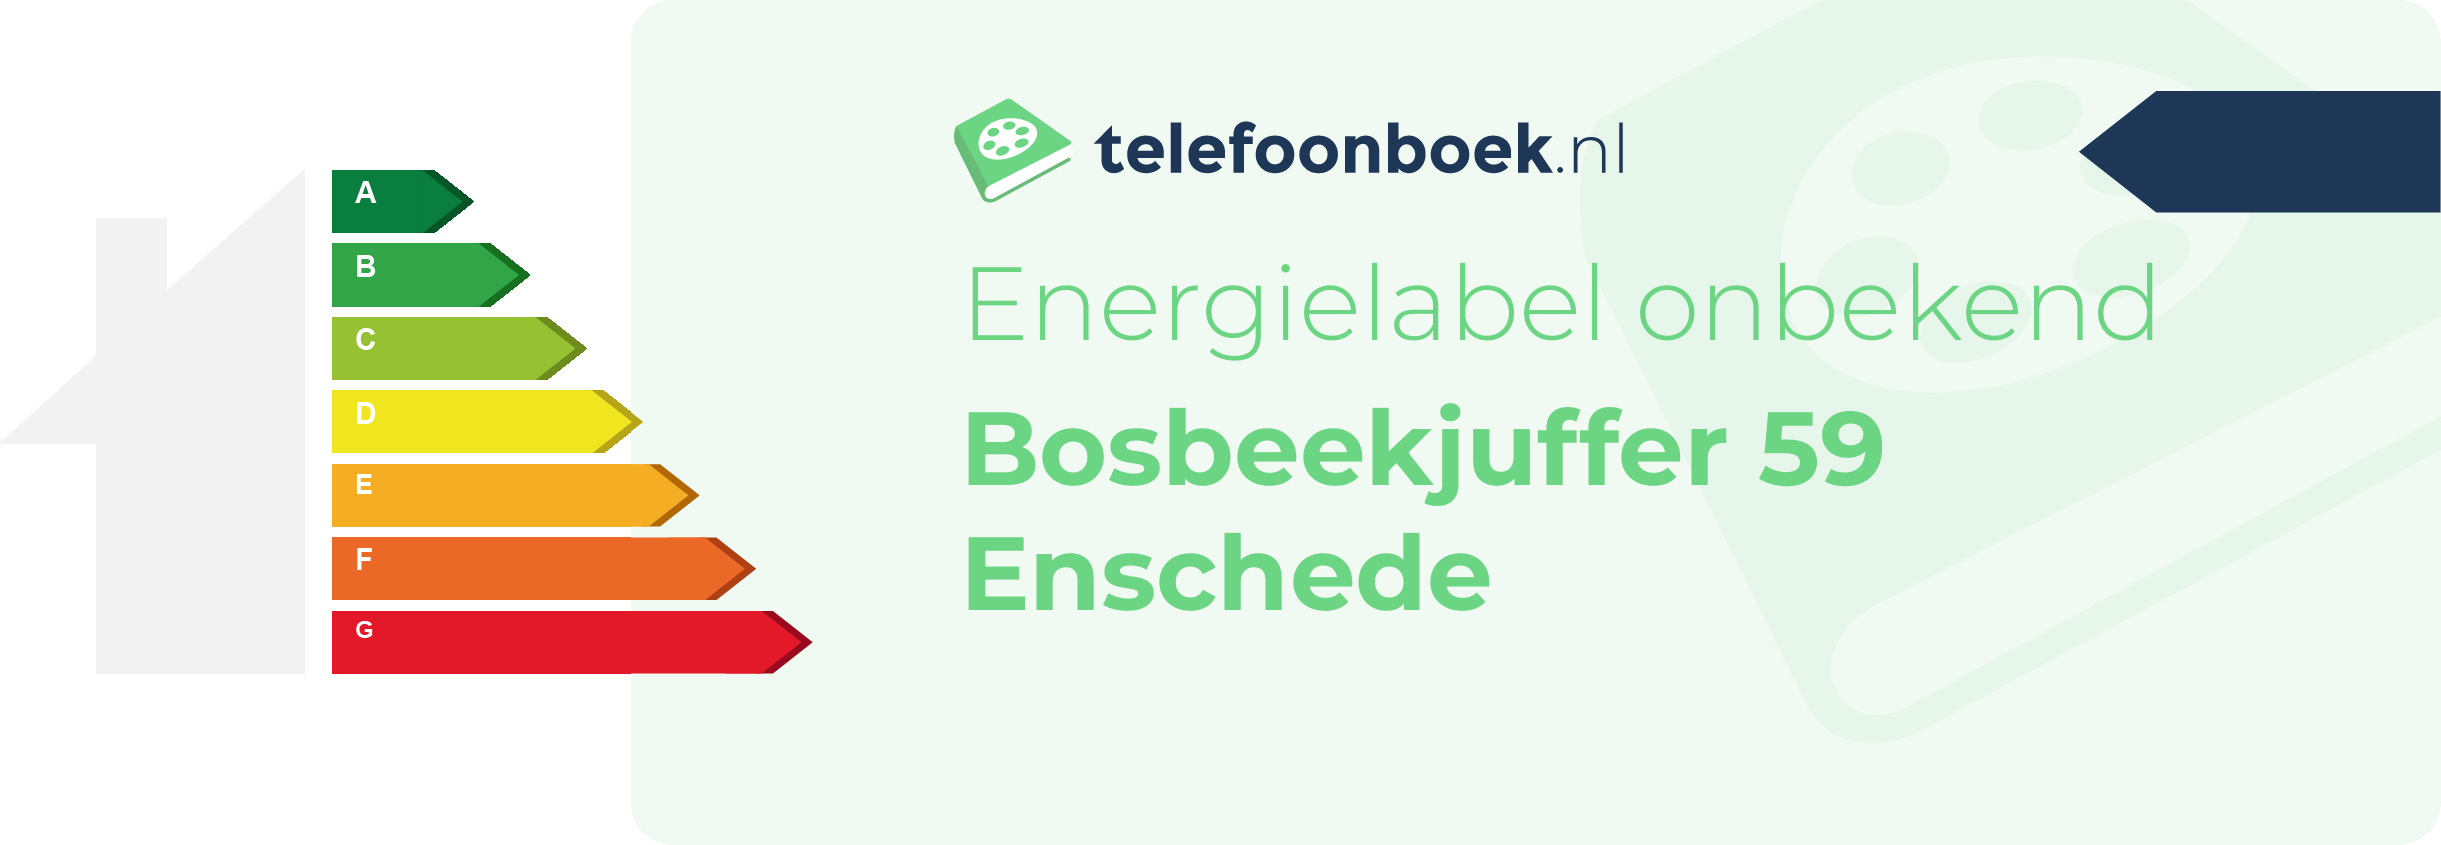 Energielabel Bosbeekjuffer 59 Enschede